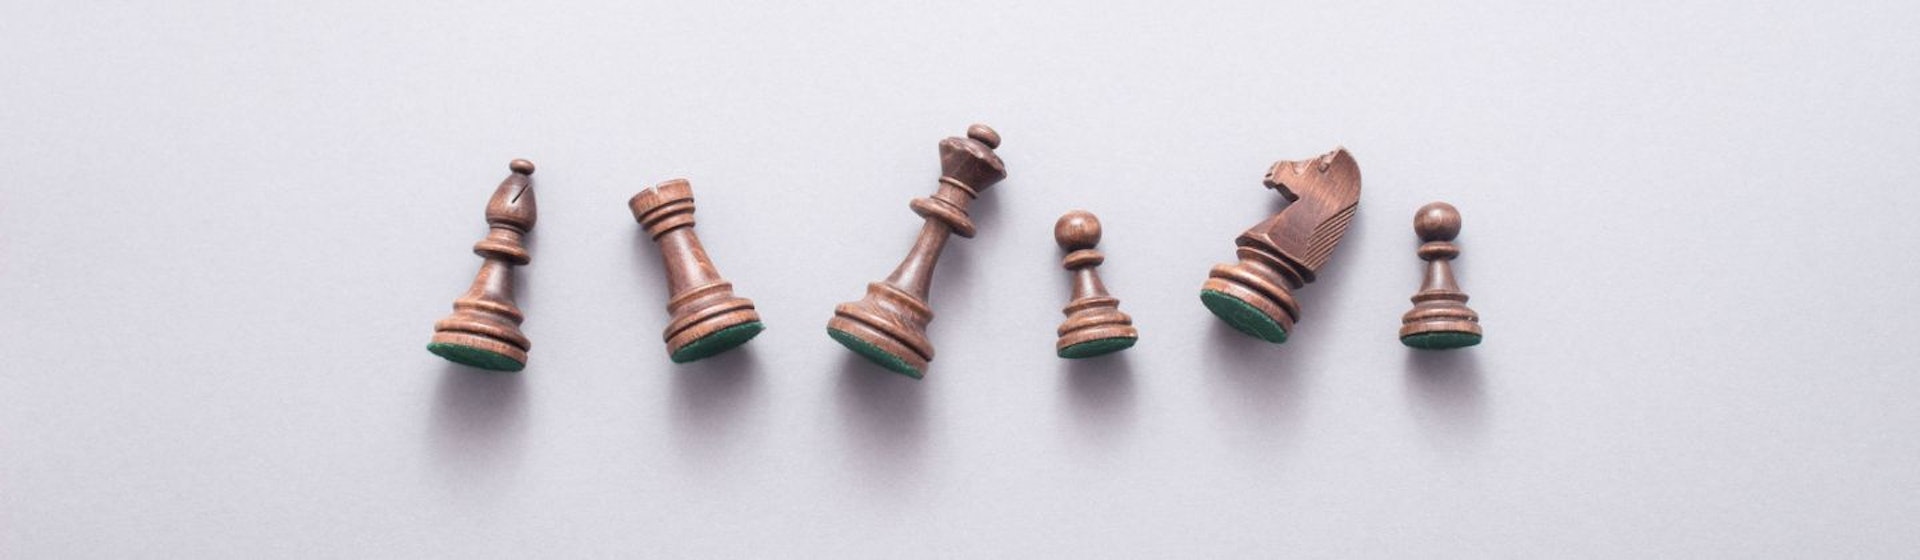 5 momentos clave en la historia del ajedrez y su evolución